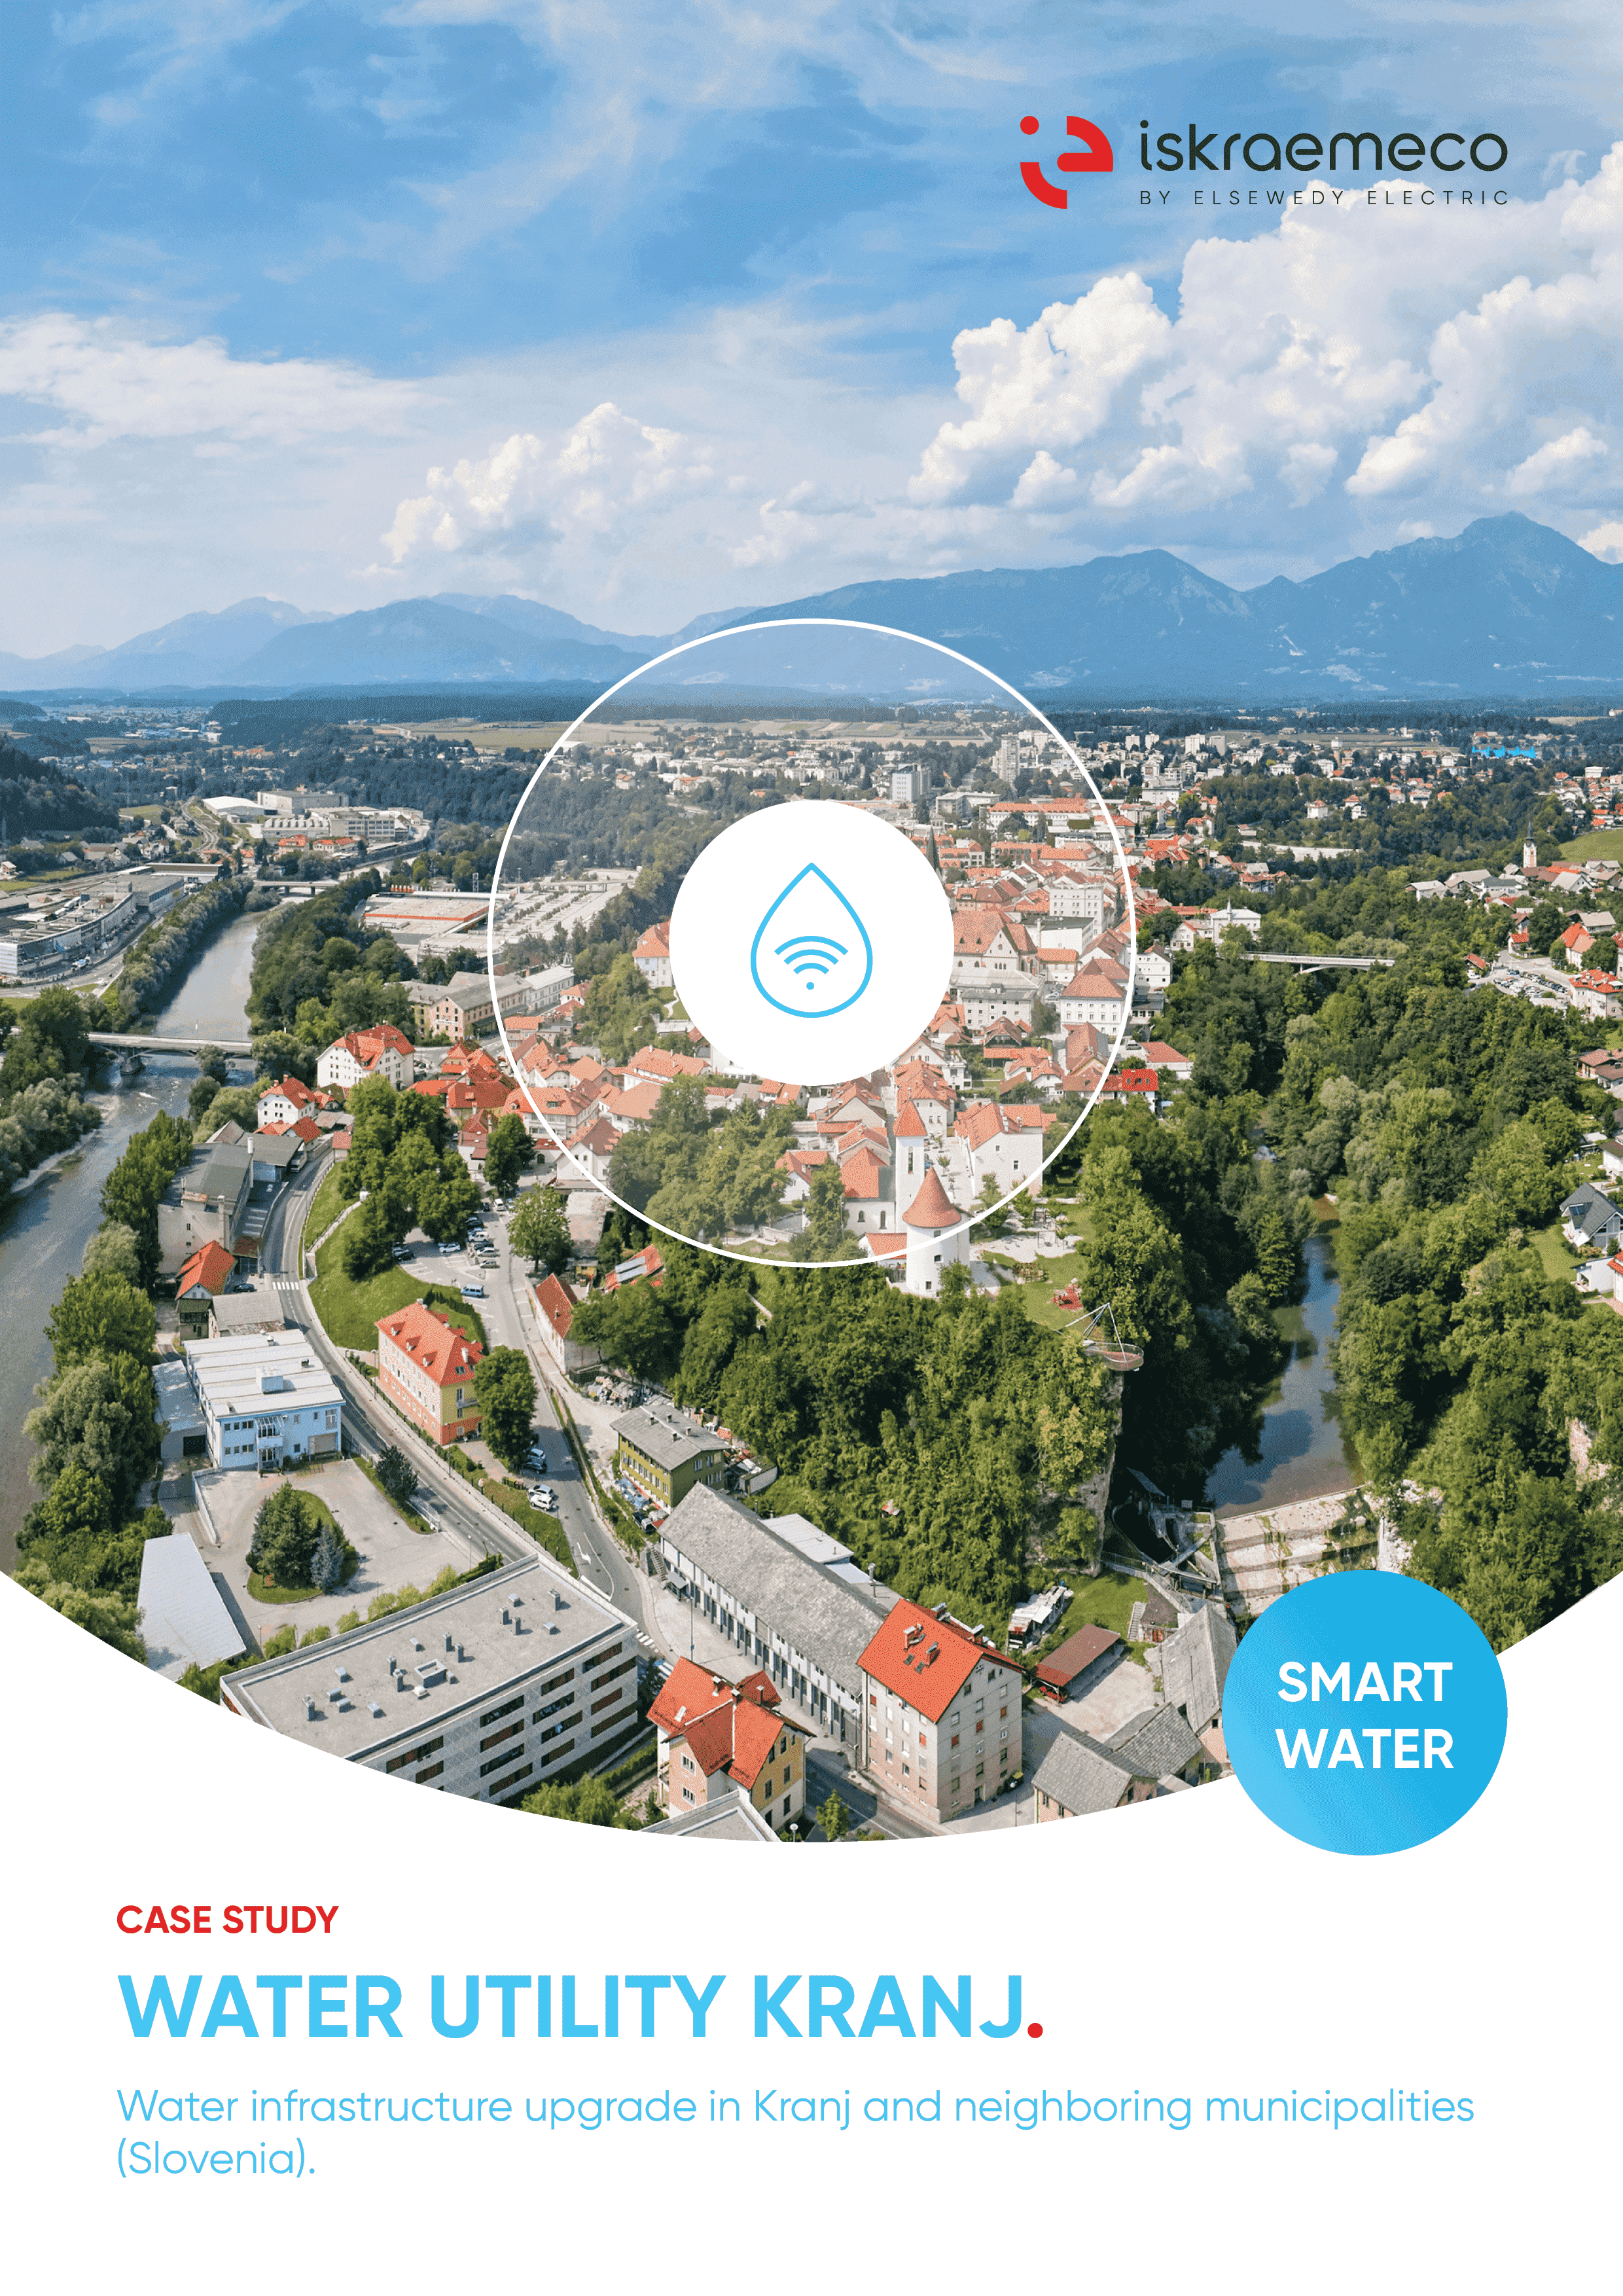 Modernisierung der Wasserinfrastruktur in Kranj, Slowenien